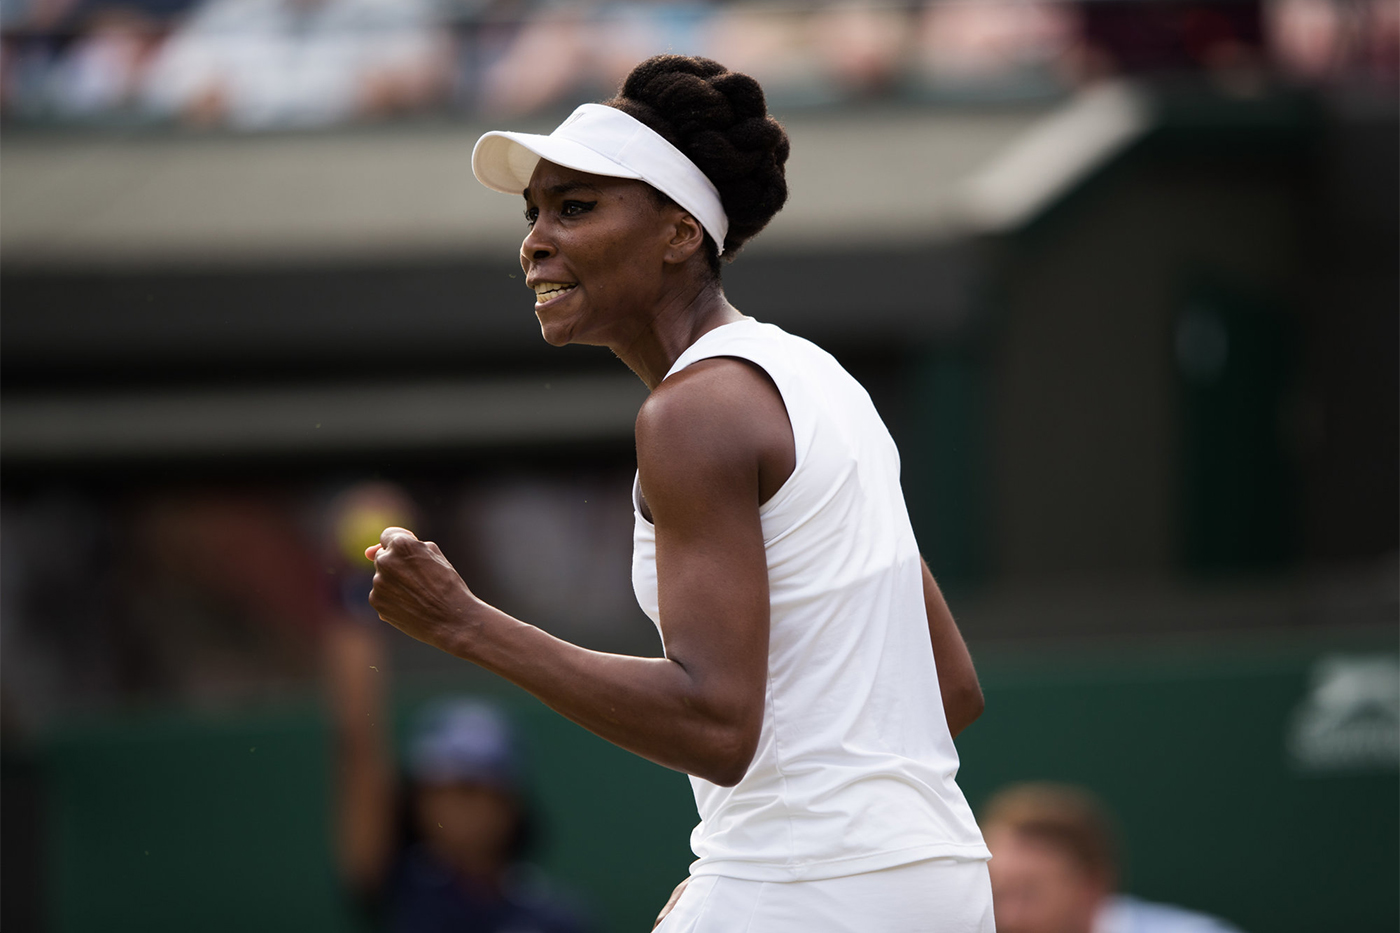 Martedì 11 luglio 'altro Venus ha giocato il centesimo match in singolare a Wimbledon (86 vittorie e 14 sconfitte).